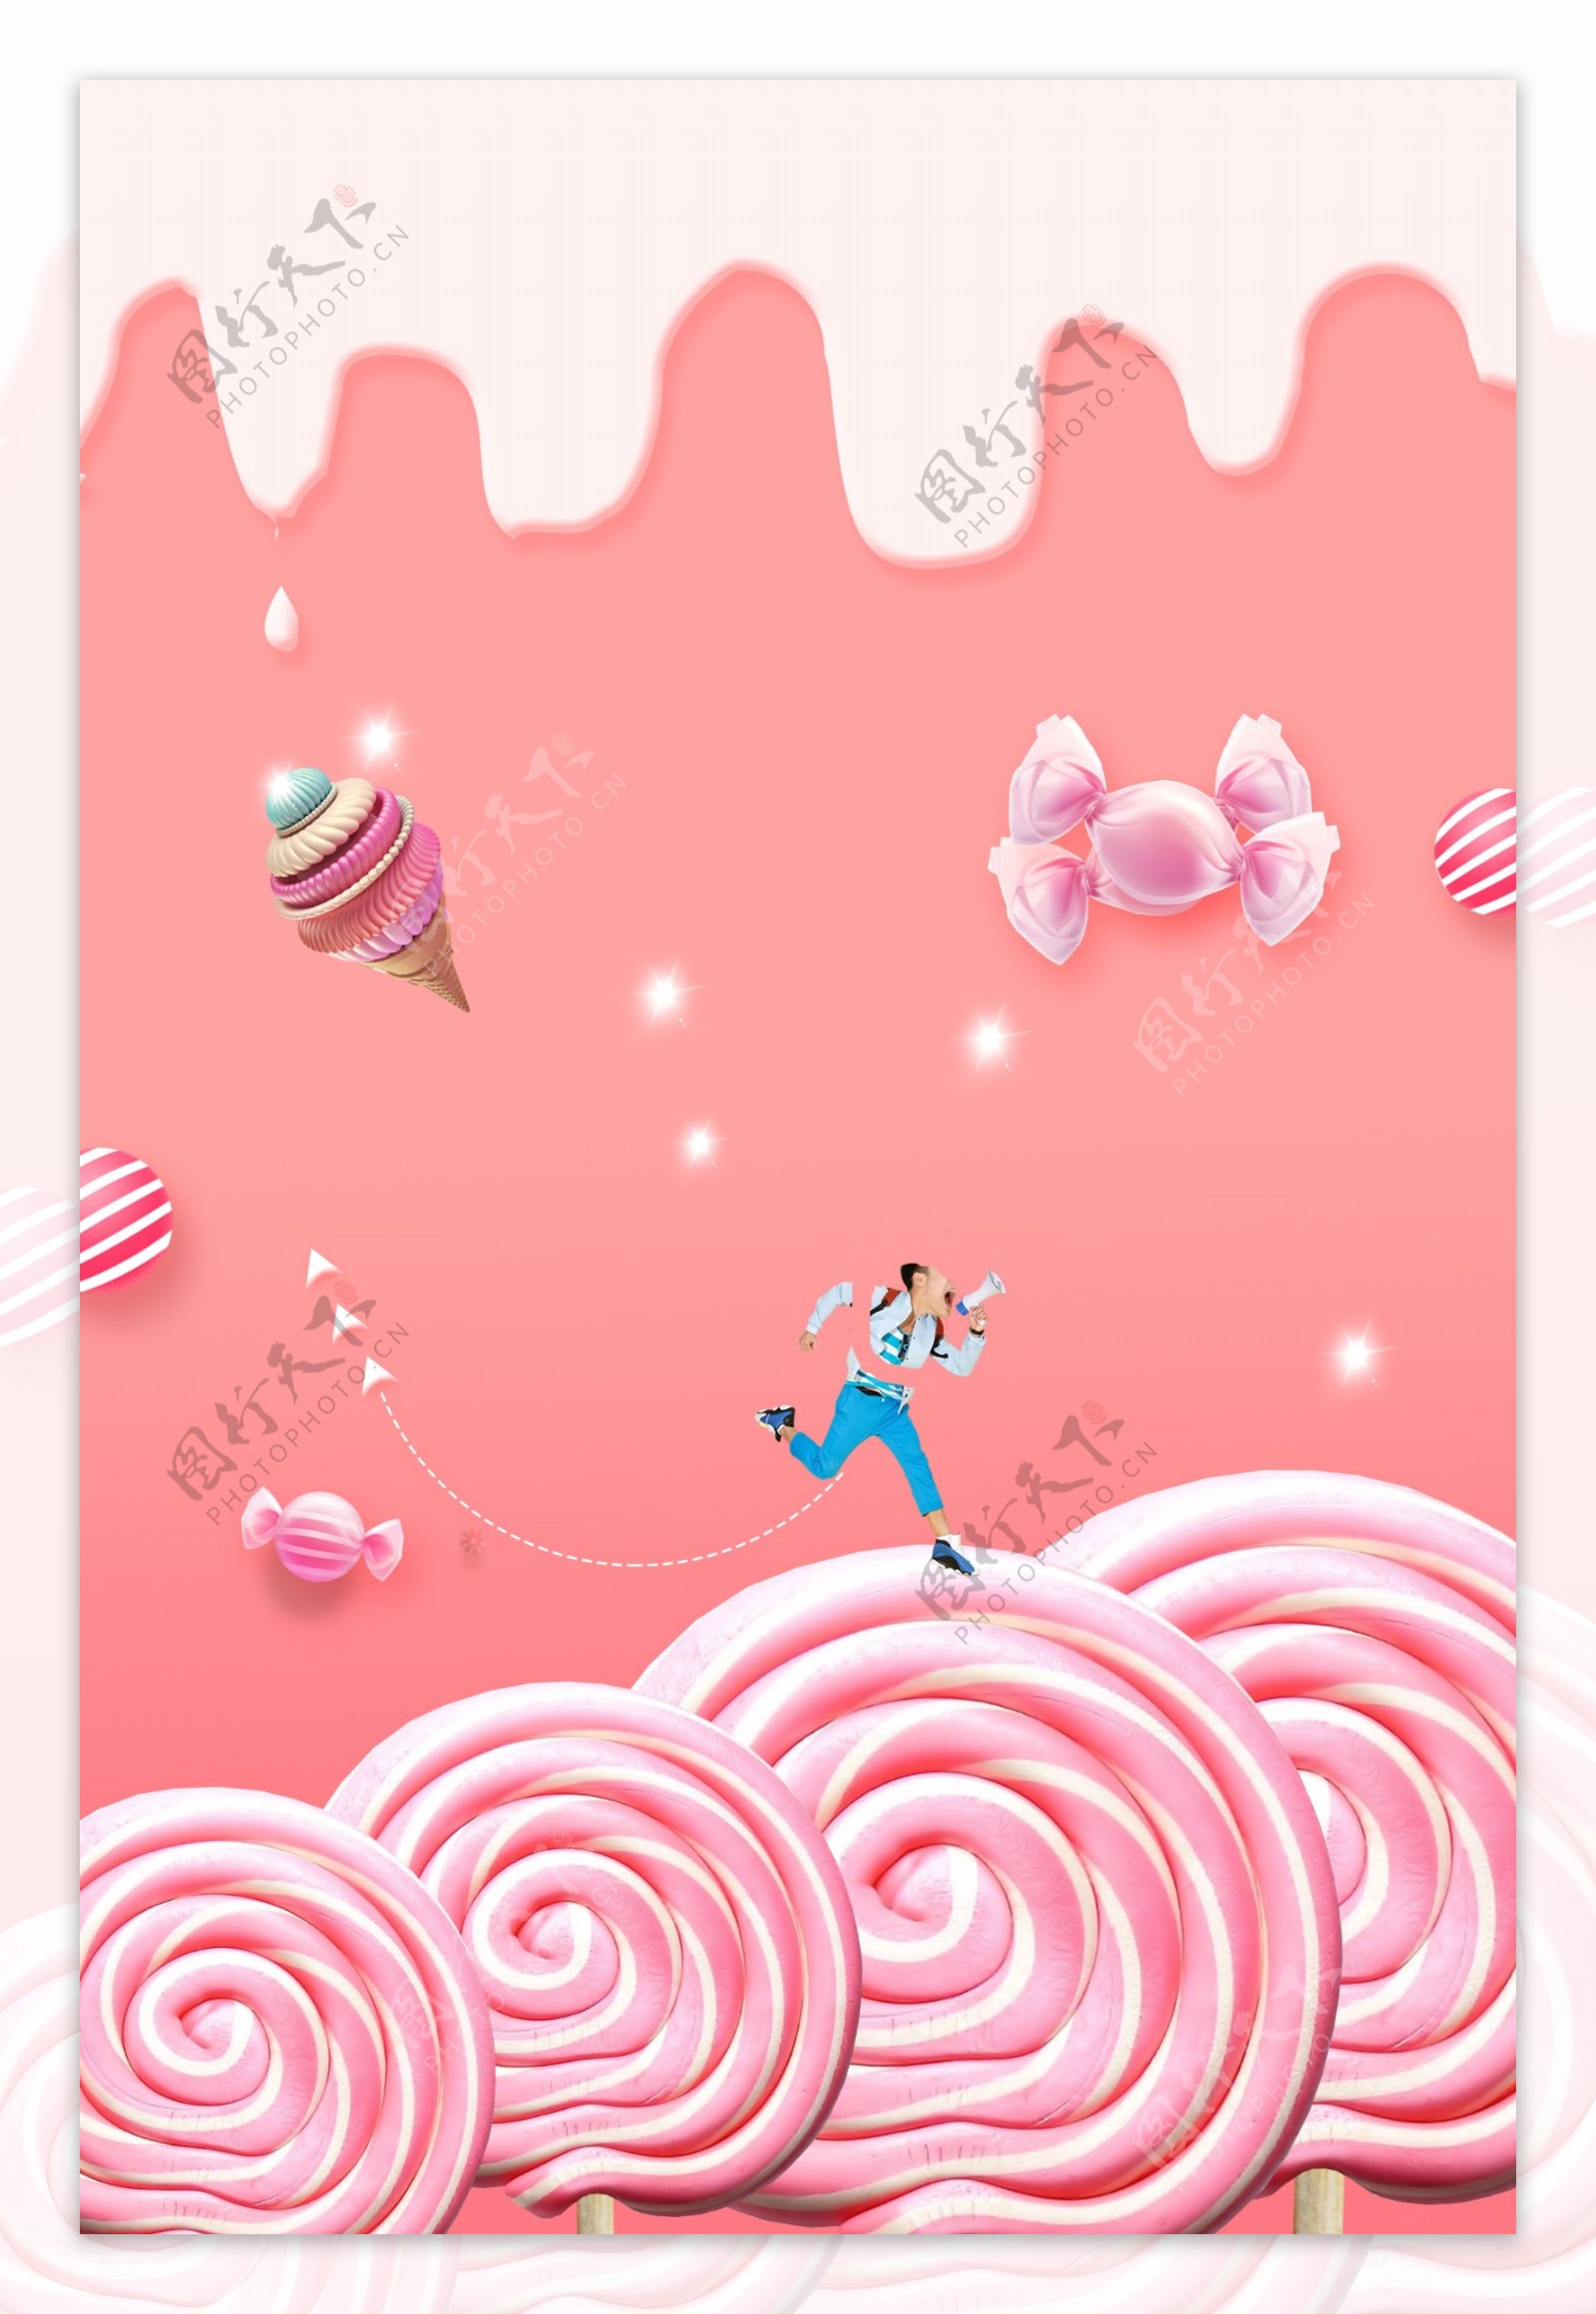 粉色糖果甜品海报背景素材